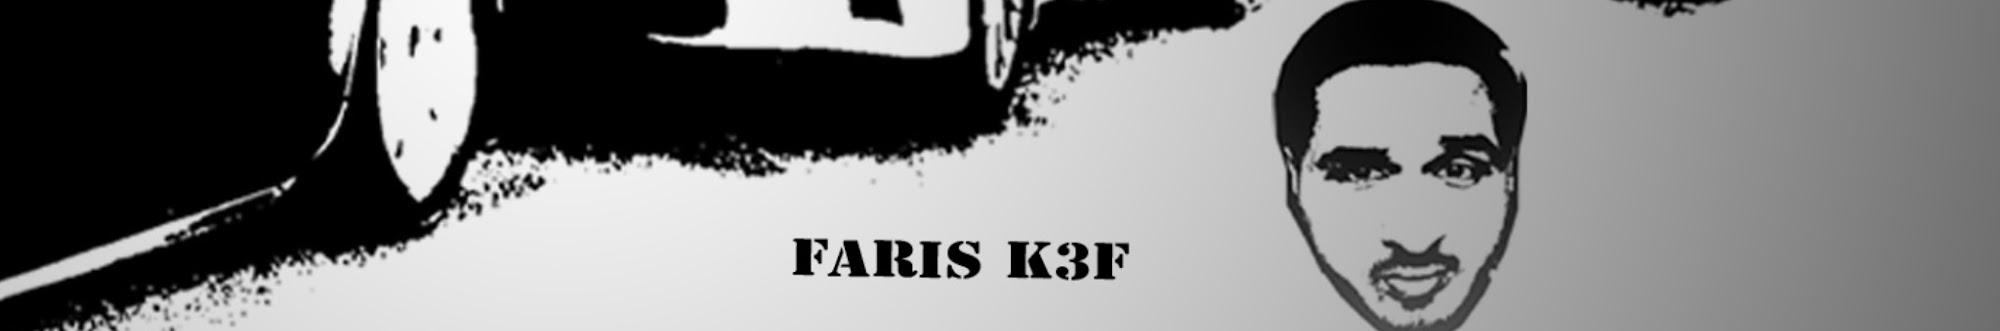 Faris k3f